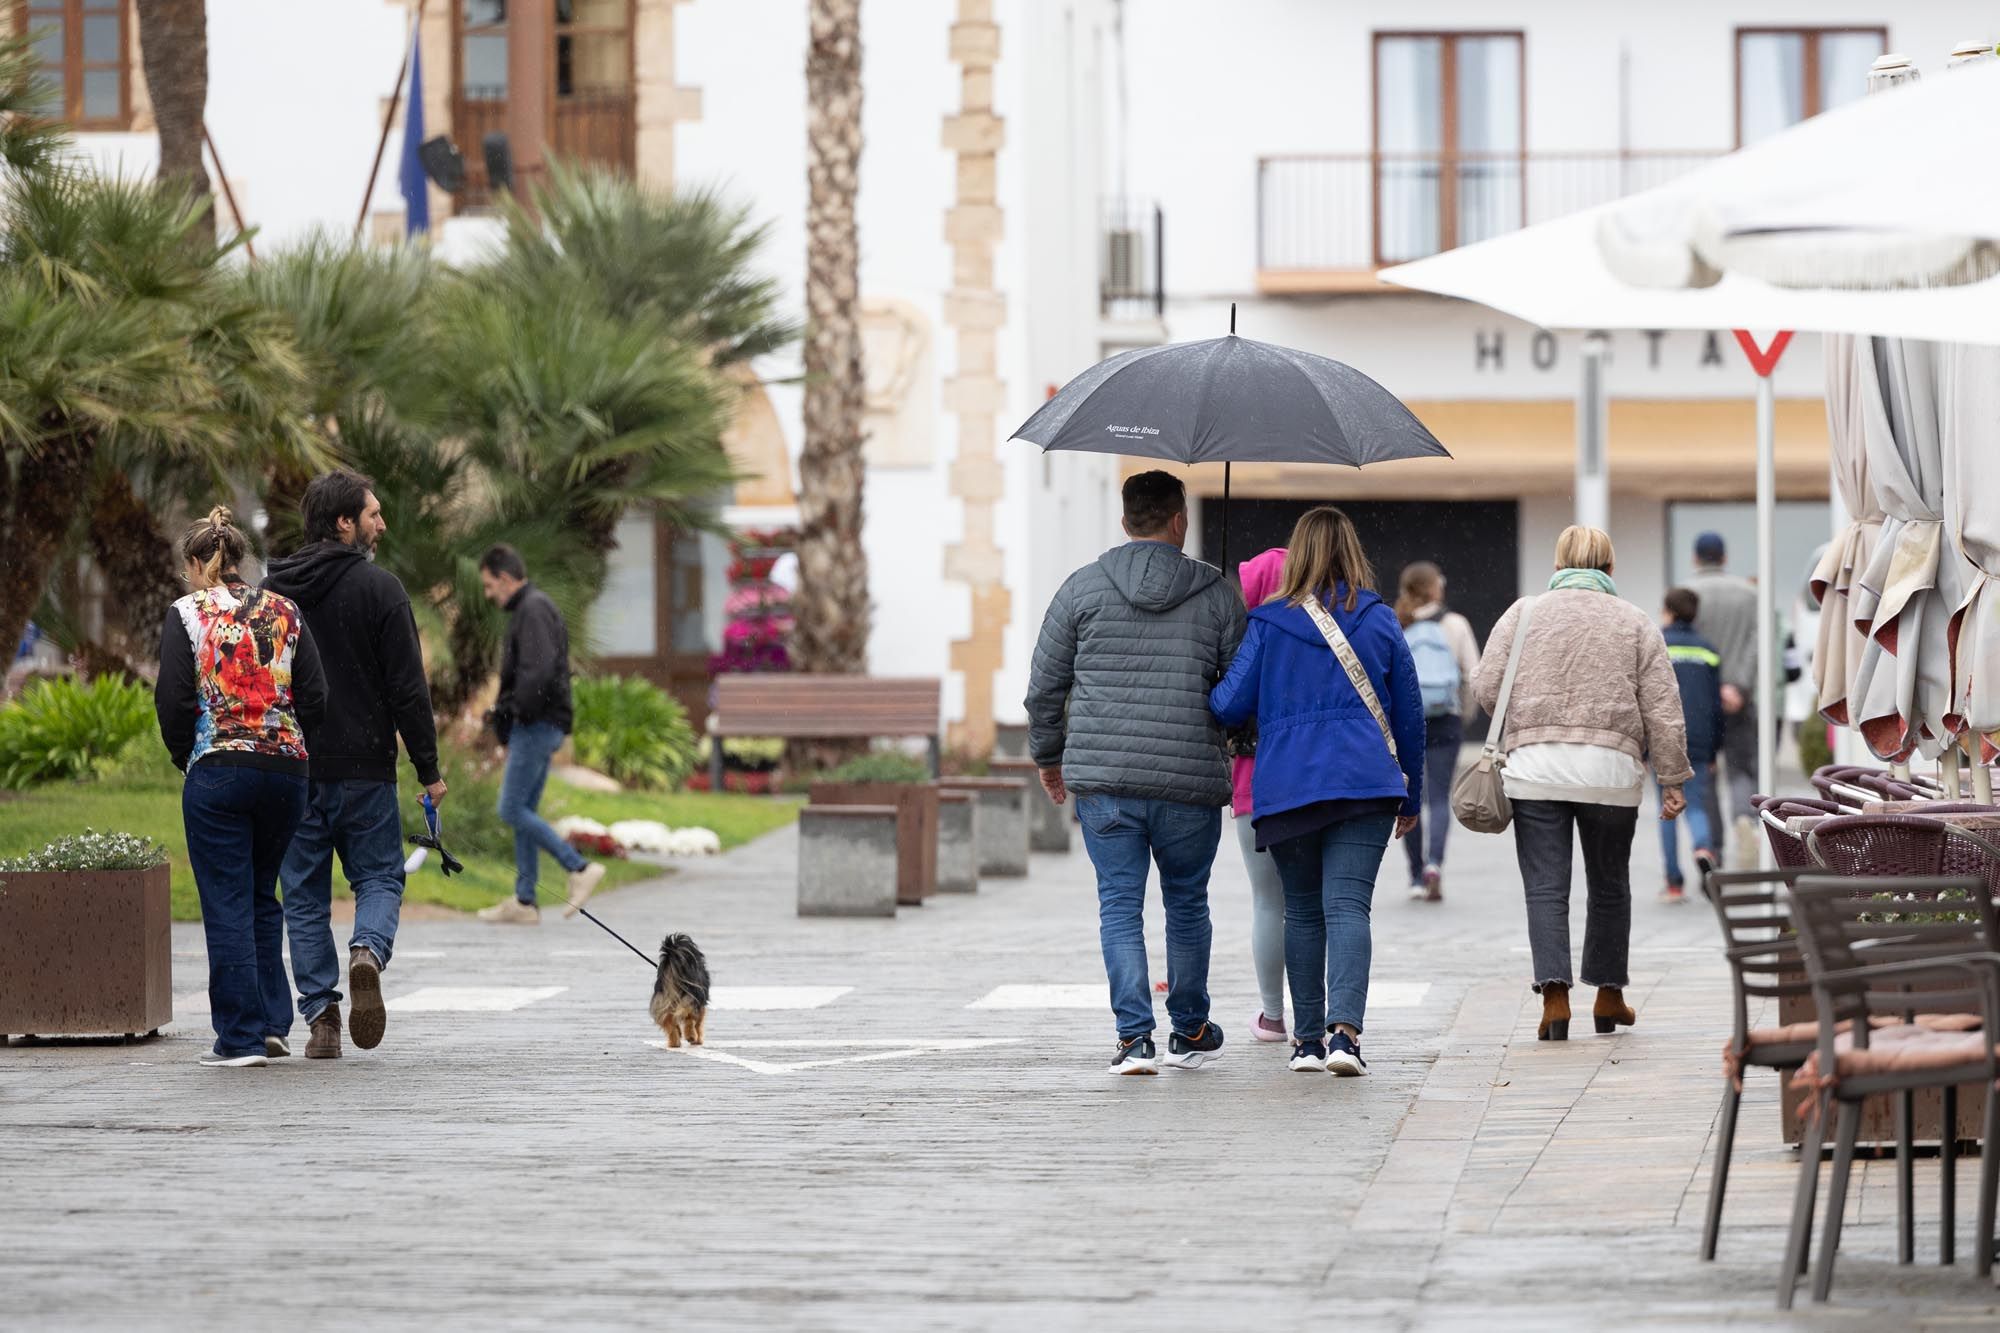 La Aemet alerta de precipitaciones intensas, con barro y tormenta en Ibiza y Formentera